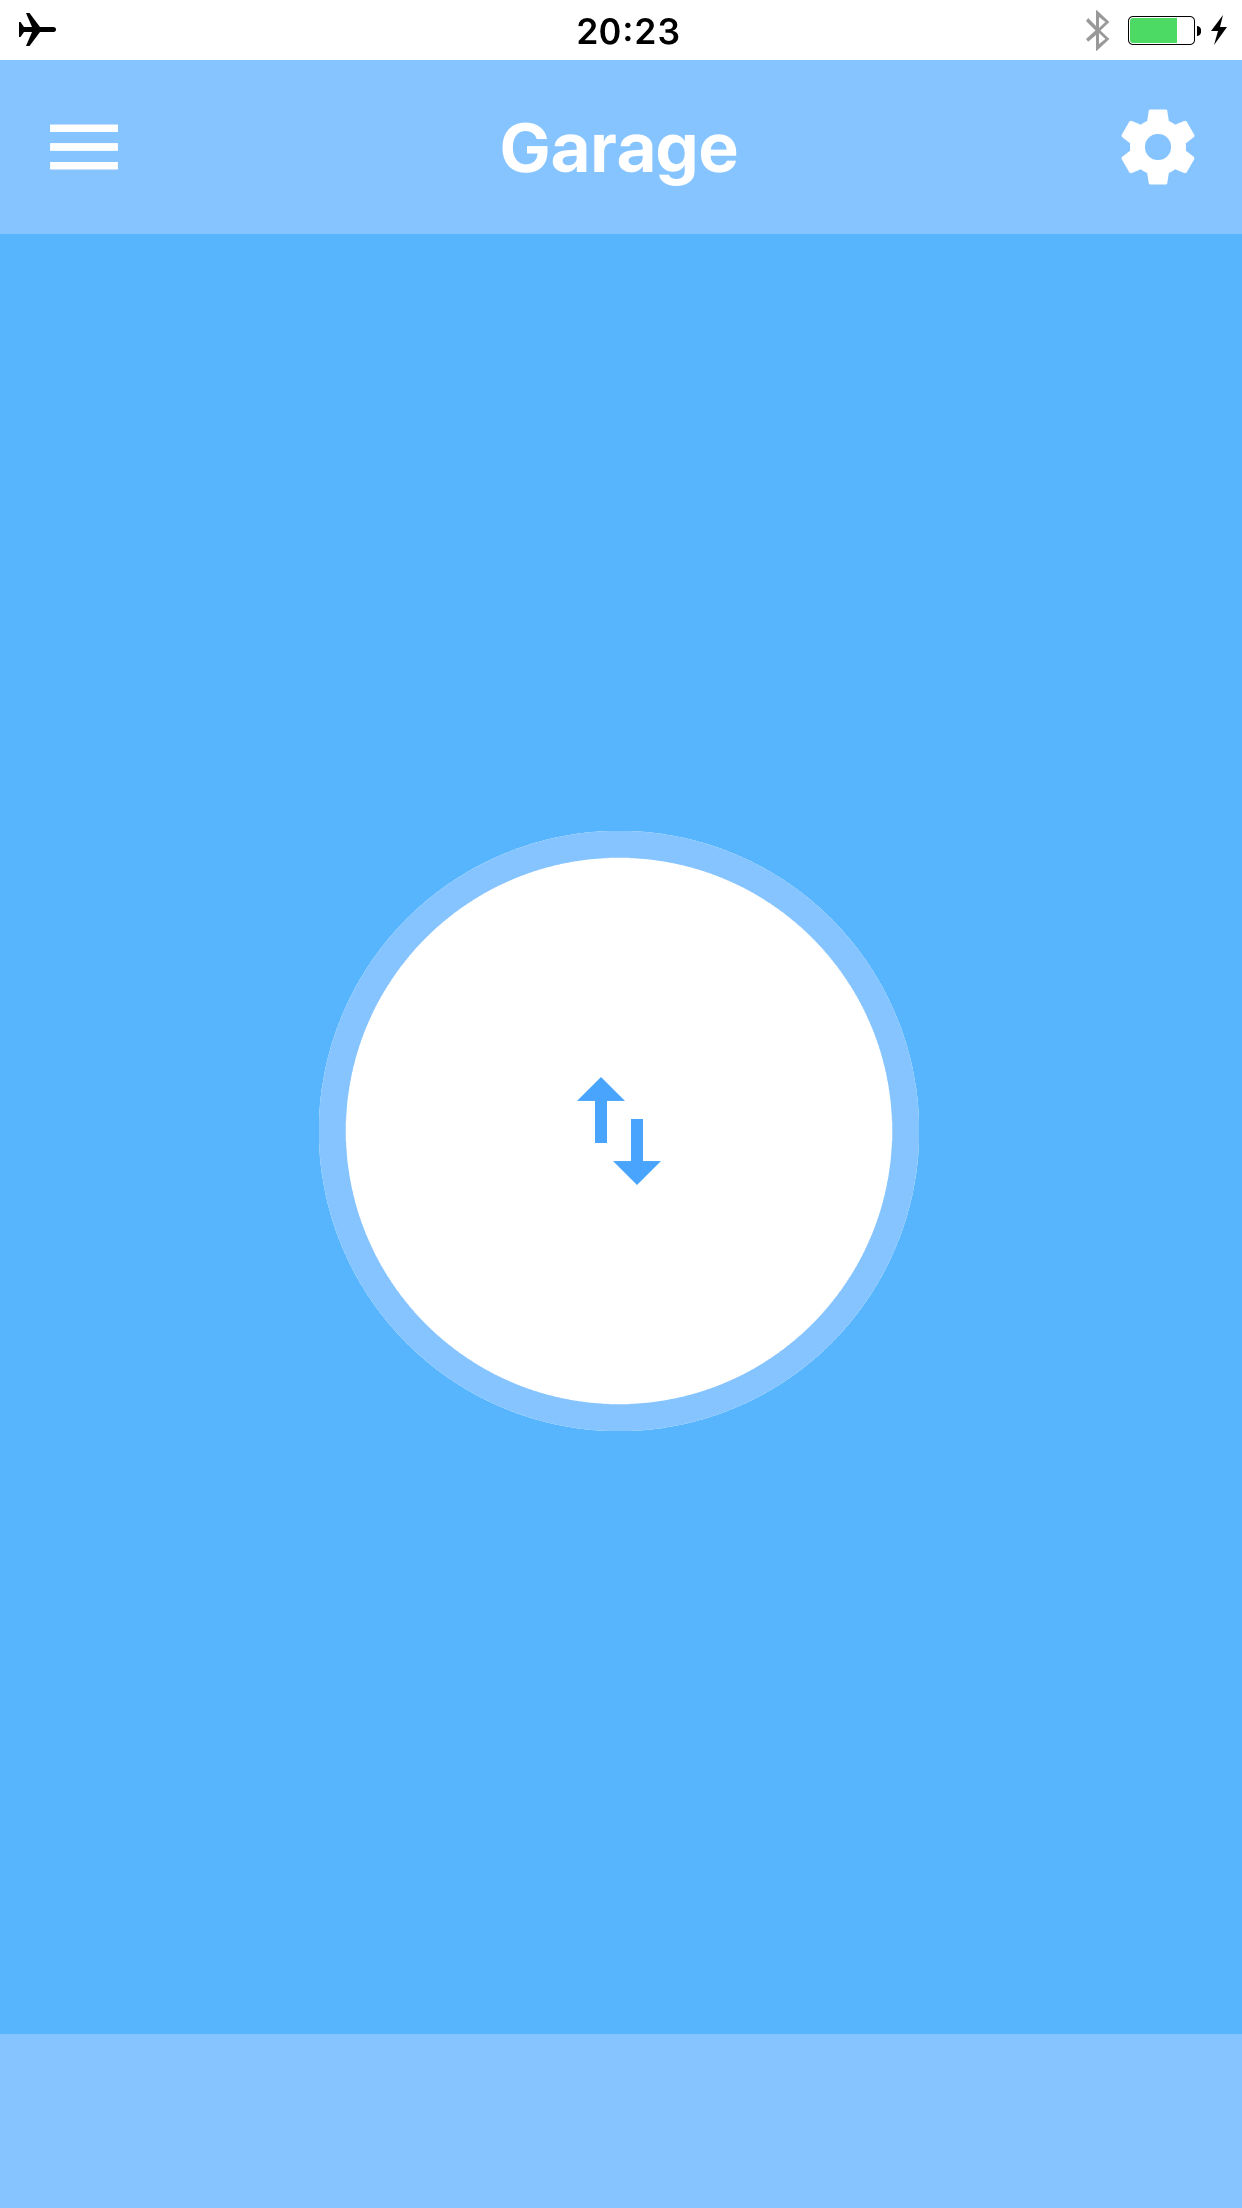 Ein Knopf zum Öffnen und Schließen des Garagentors mit einer iOS App